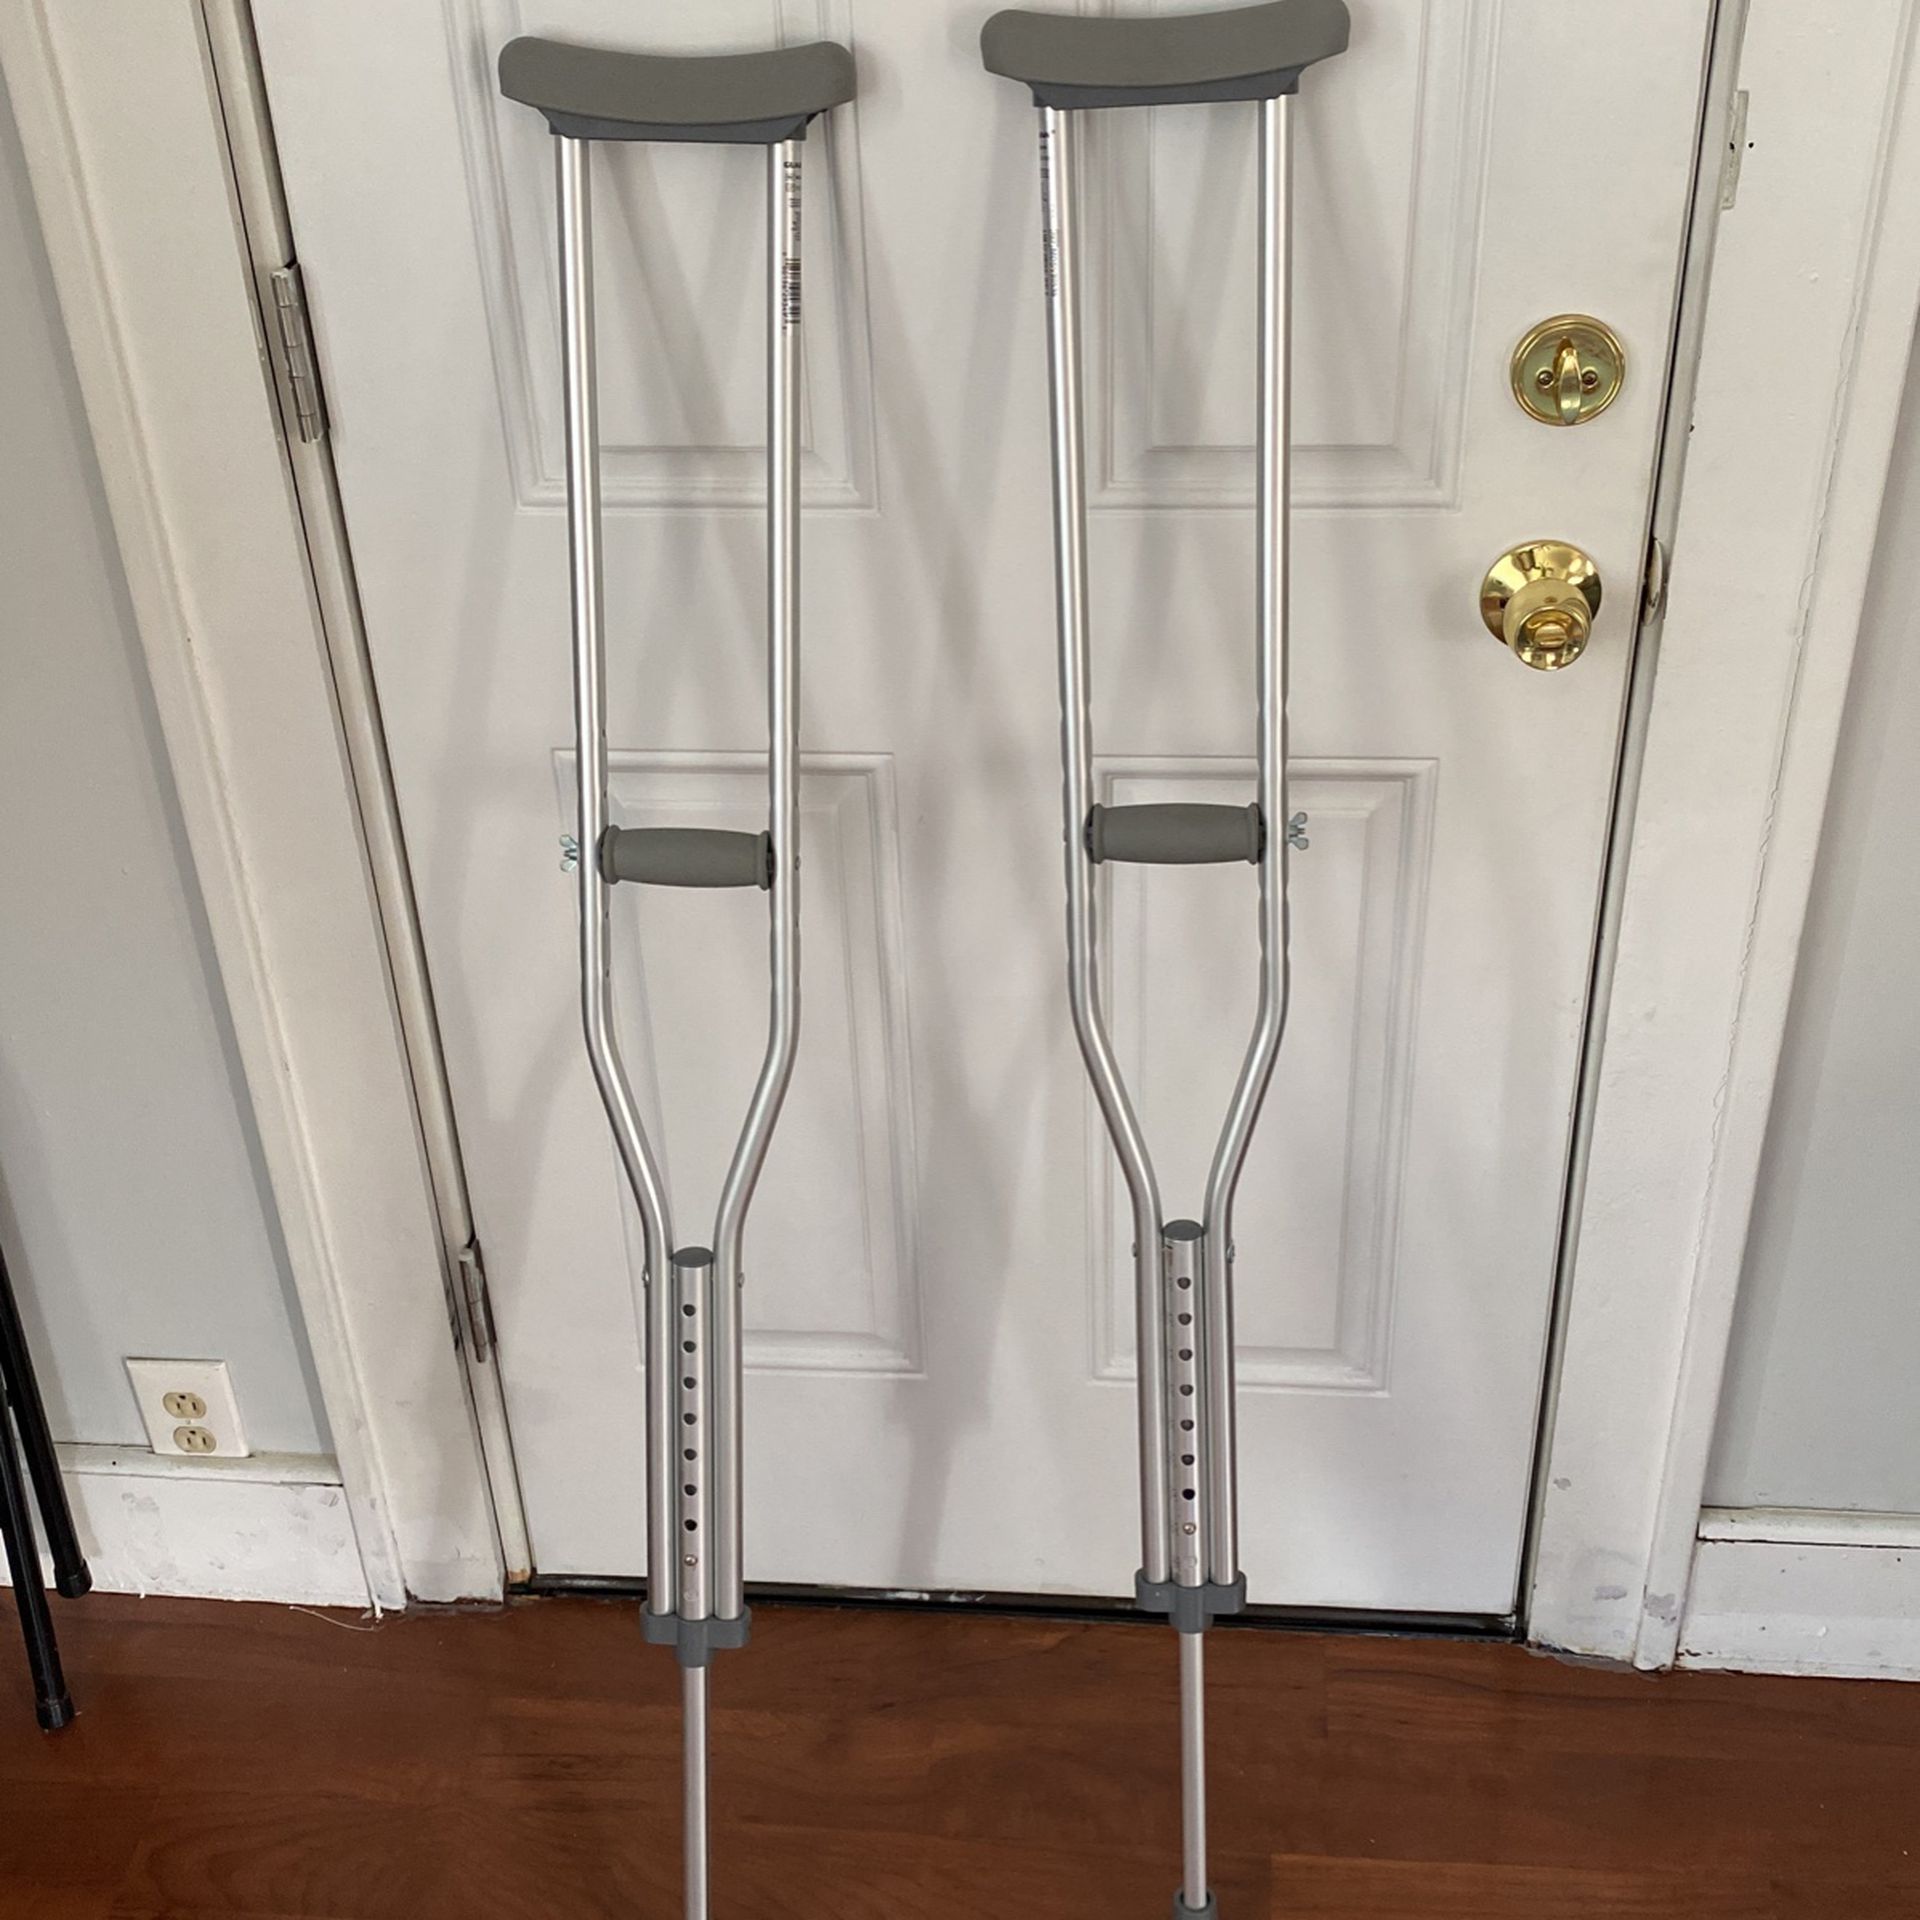 New Crutches 